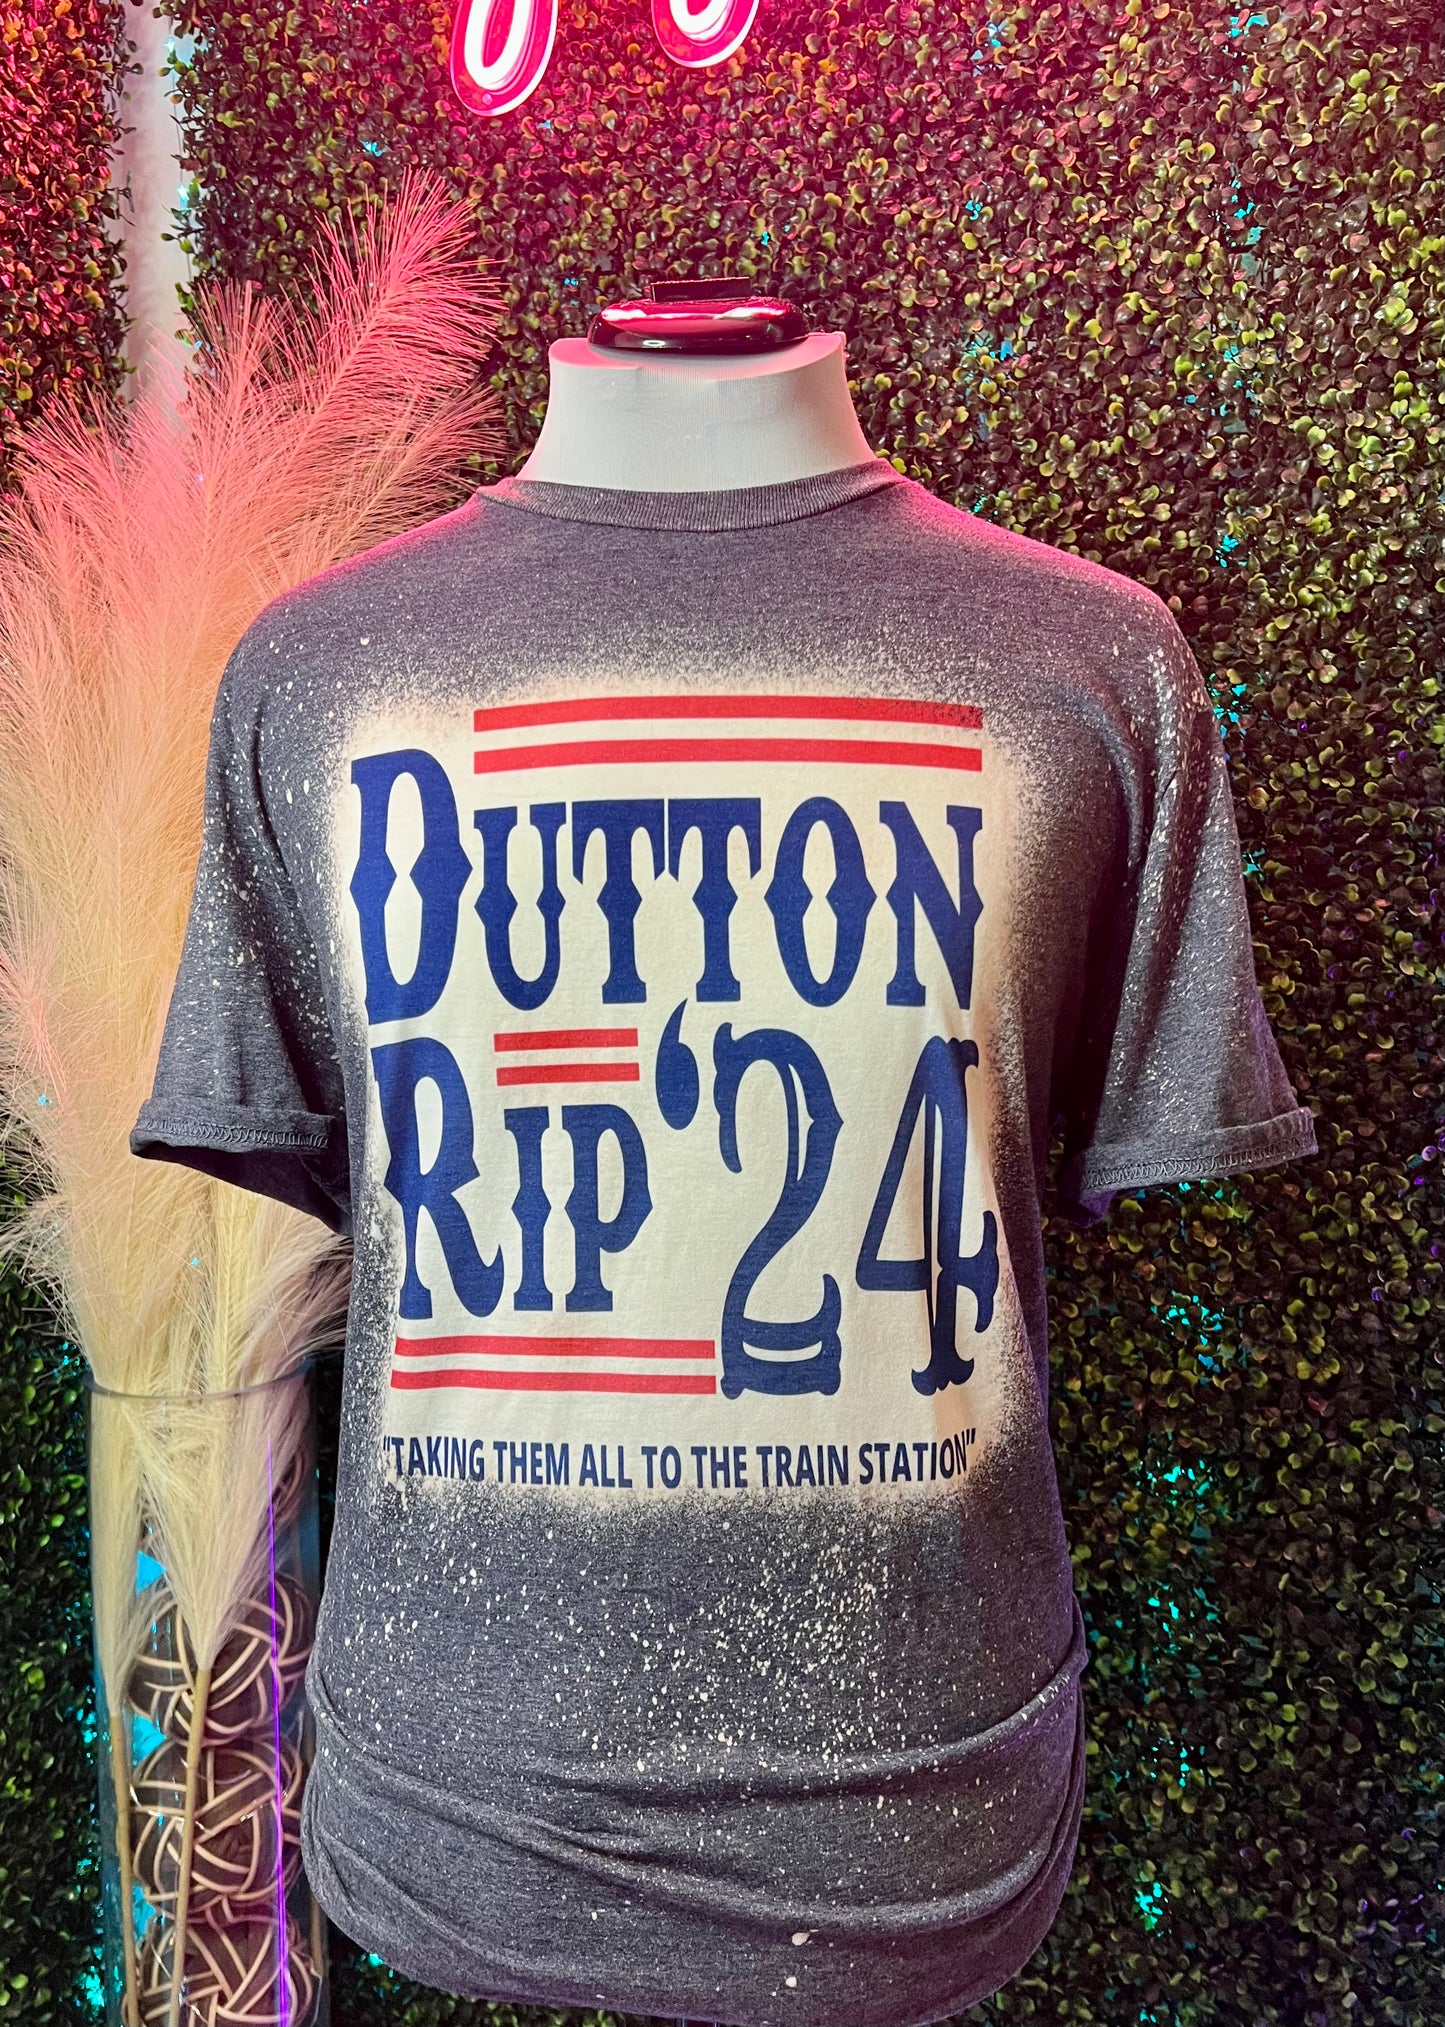 Dutton Rip 24